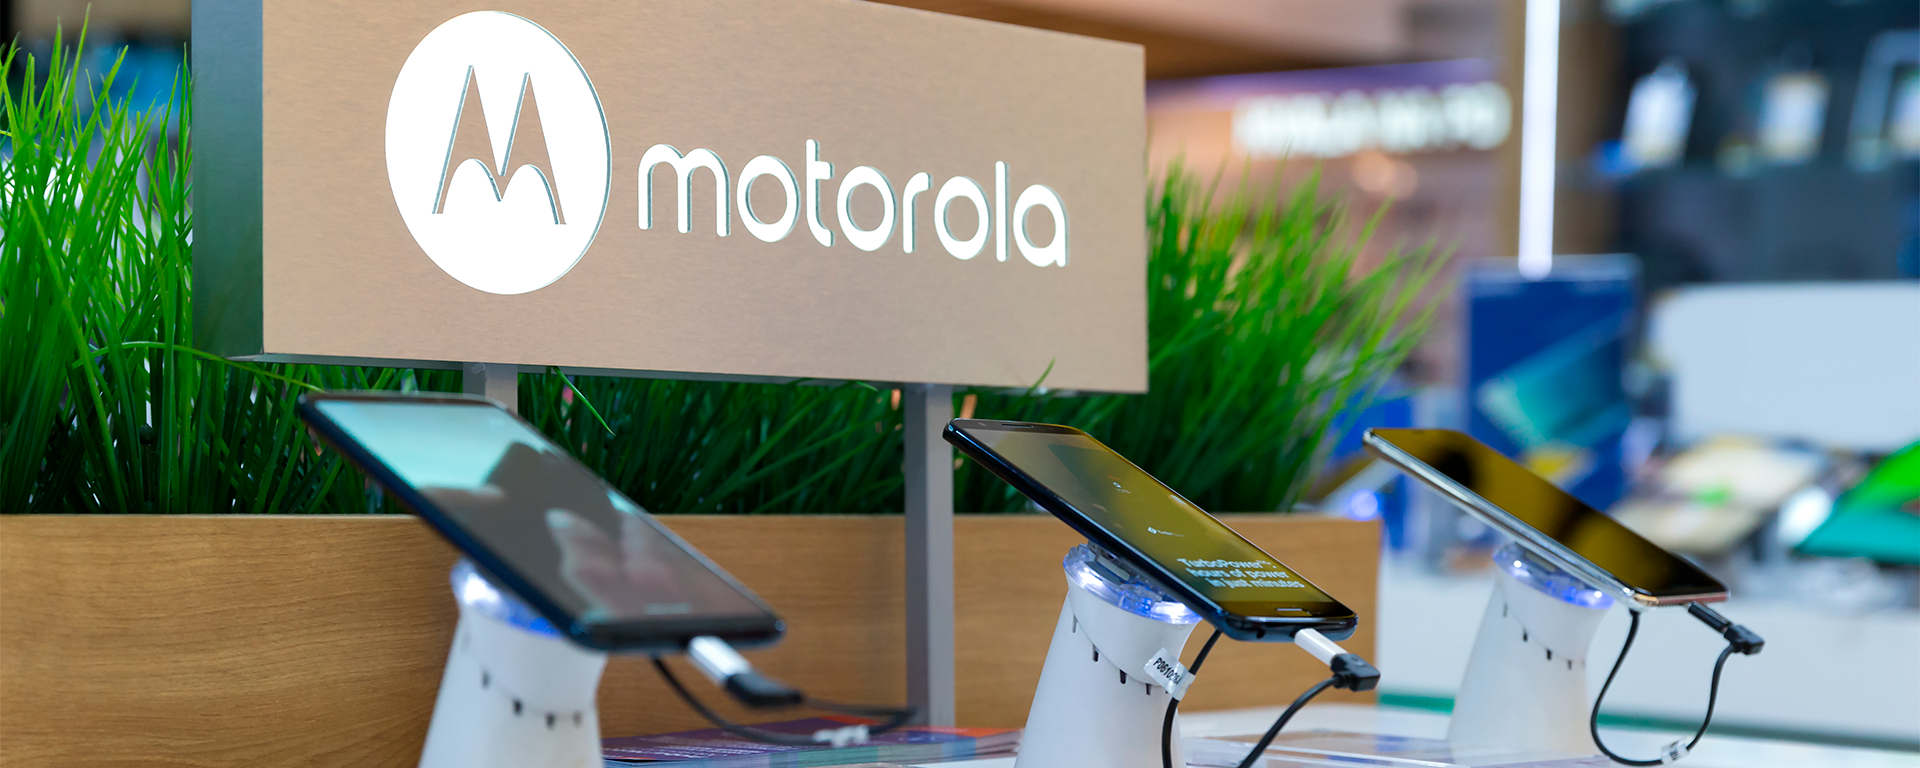 Motorola escala suas operações D2C globais